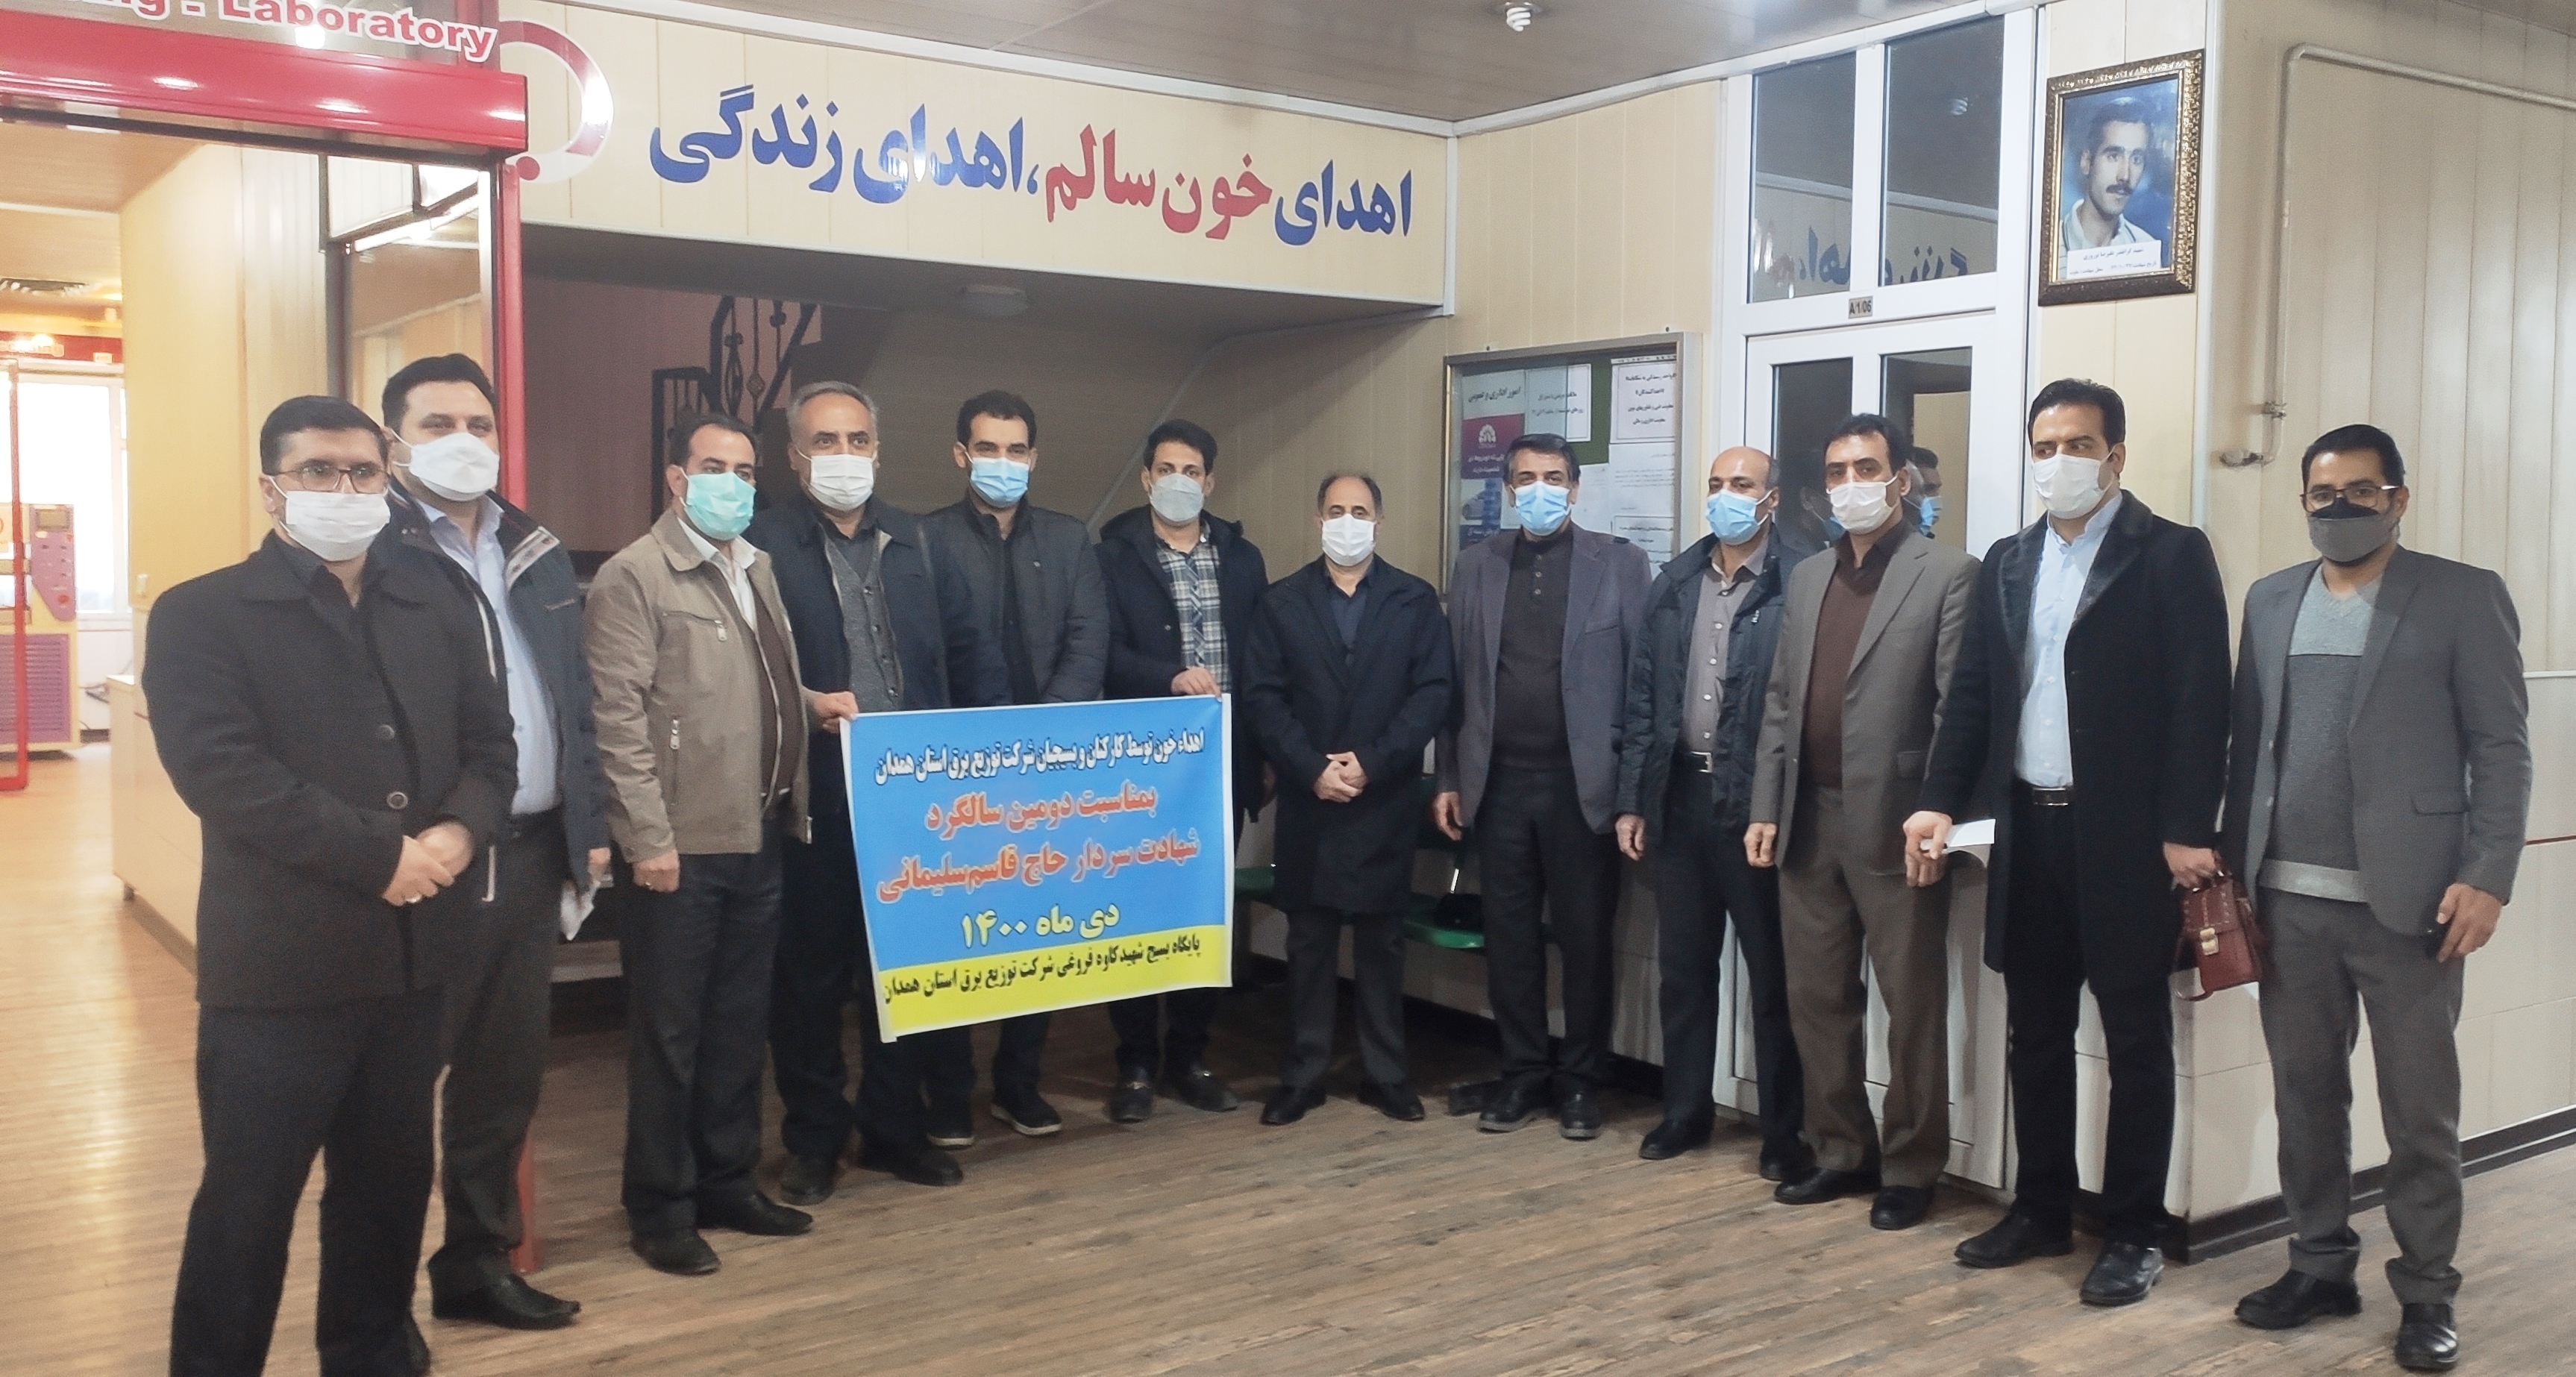 اهدای خون بسیجیان شرکت توزیع برق استان همدان به مناسبت سالگرد شهید سلیمانی